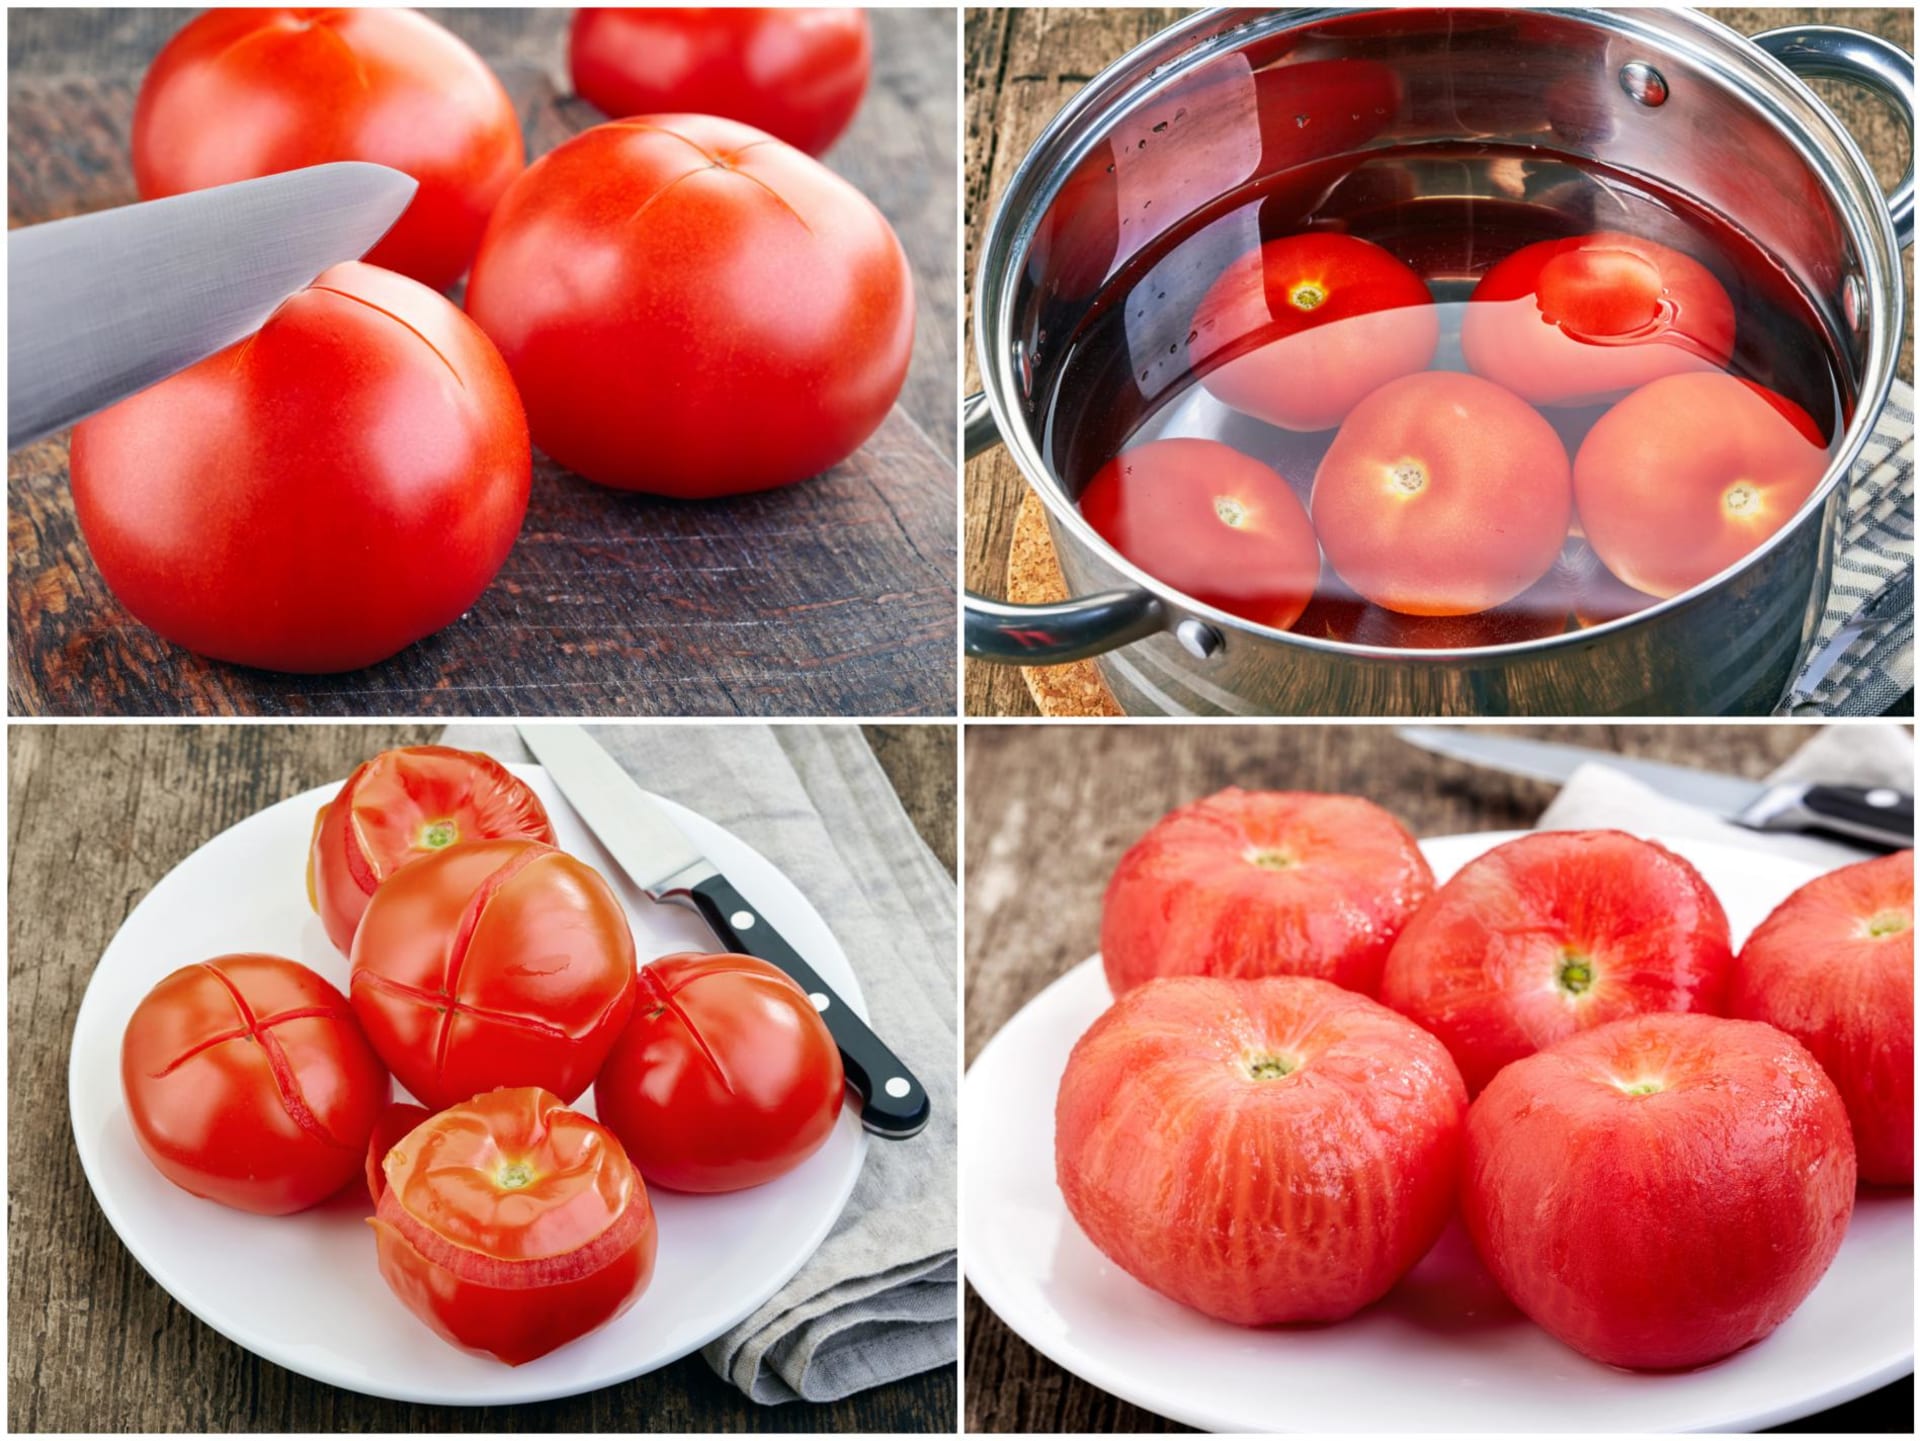 Naučte se, jak rychle a bez námahy oloupat rajčata 2